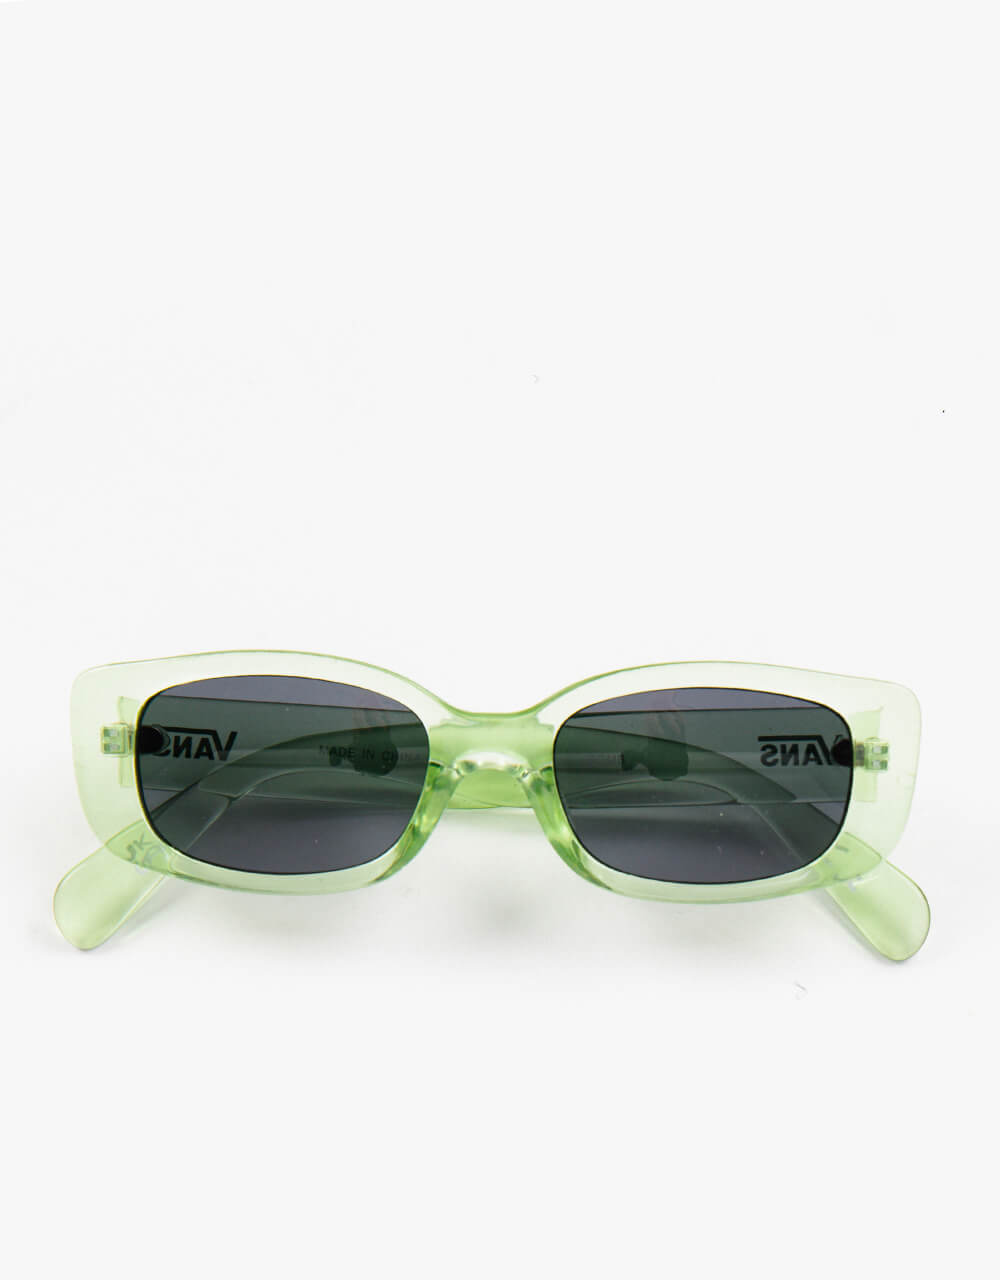 Vans Bomb Sunglasses - Celadon Green